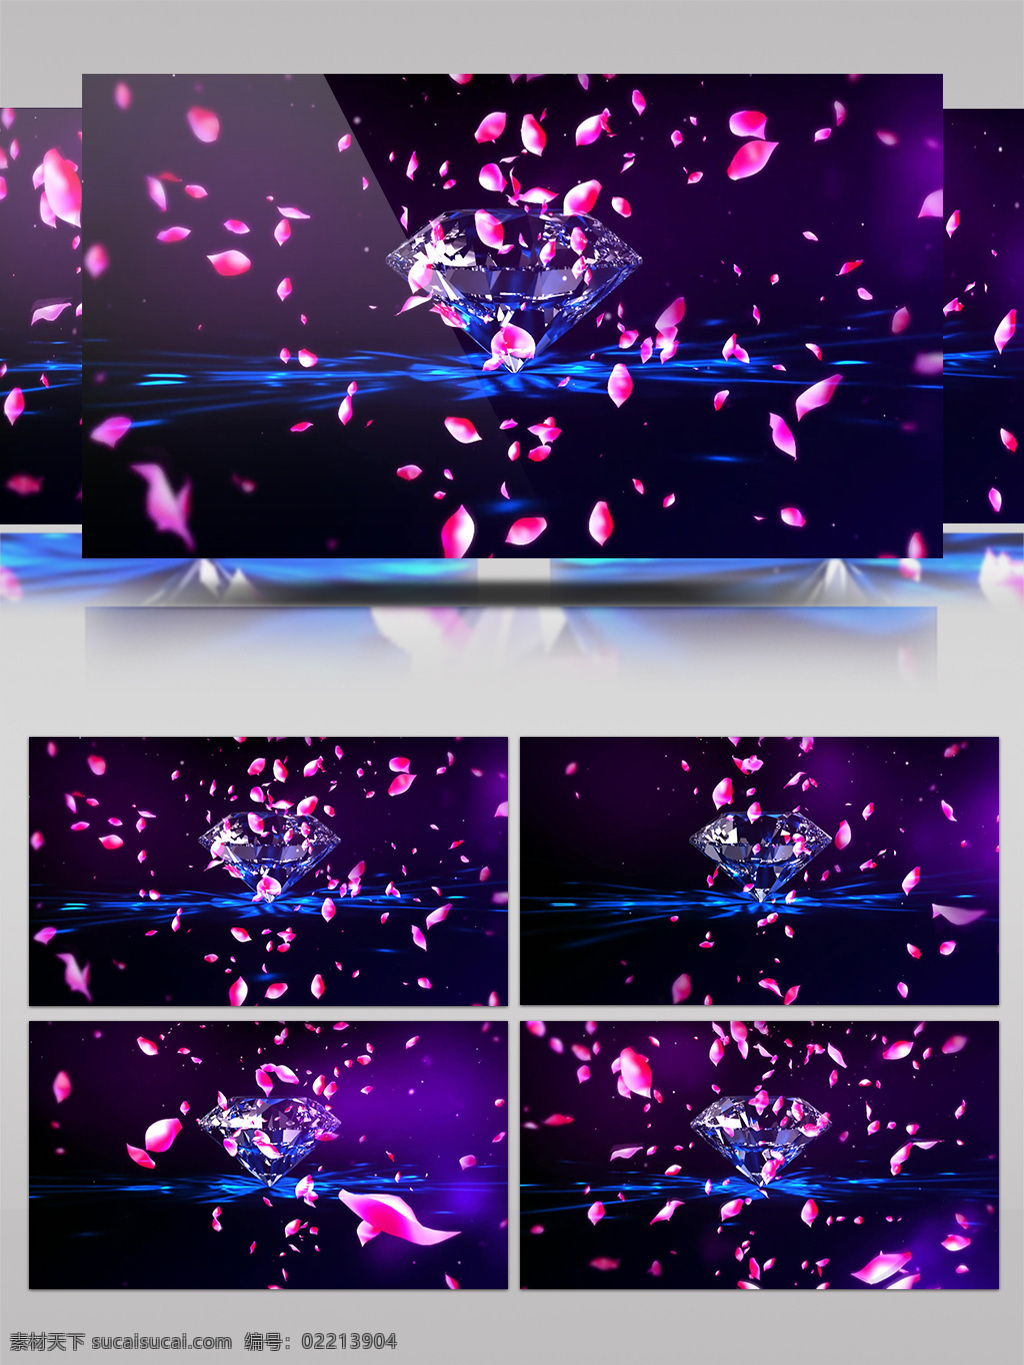 樱花 飞舞 晚会 视频 花瓣 绚丽 高清视频素材 视频素材 动态视频素材